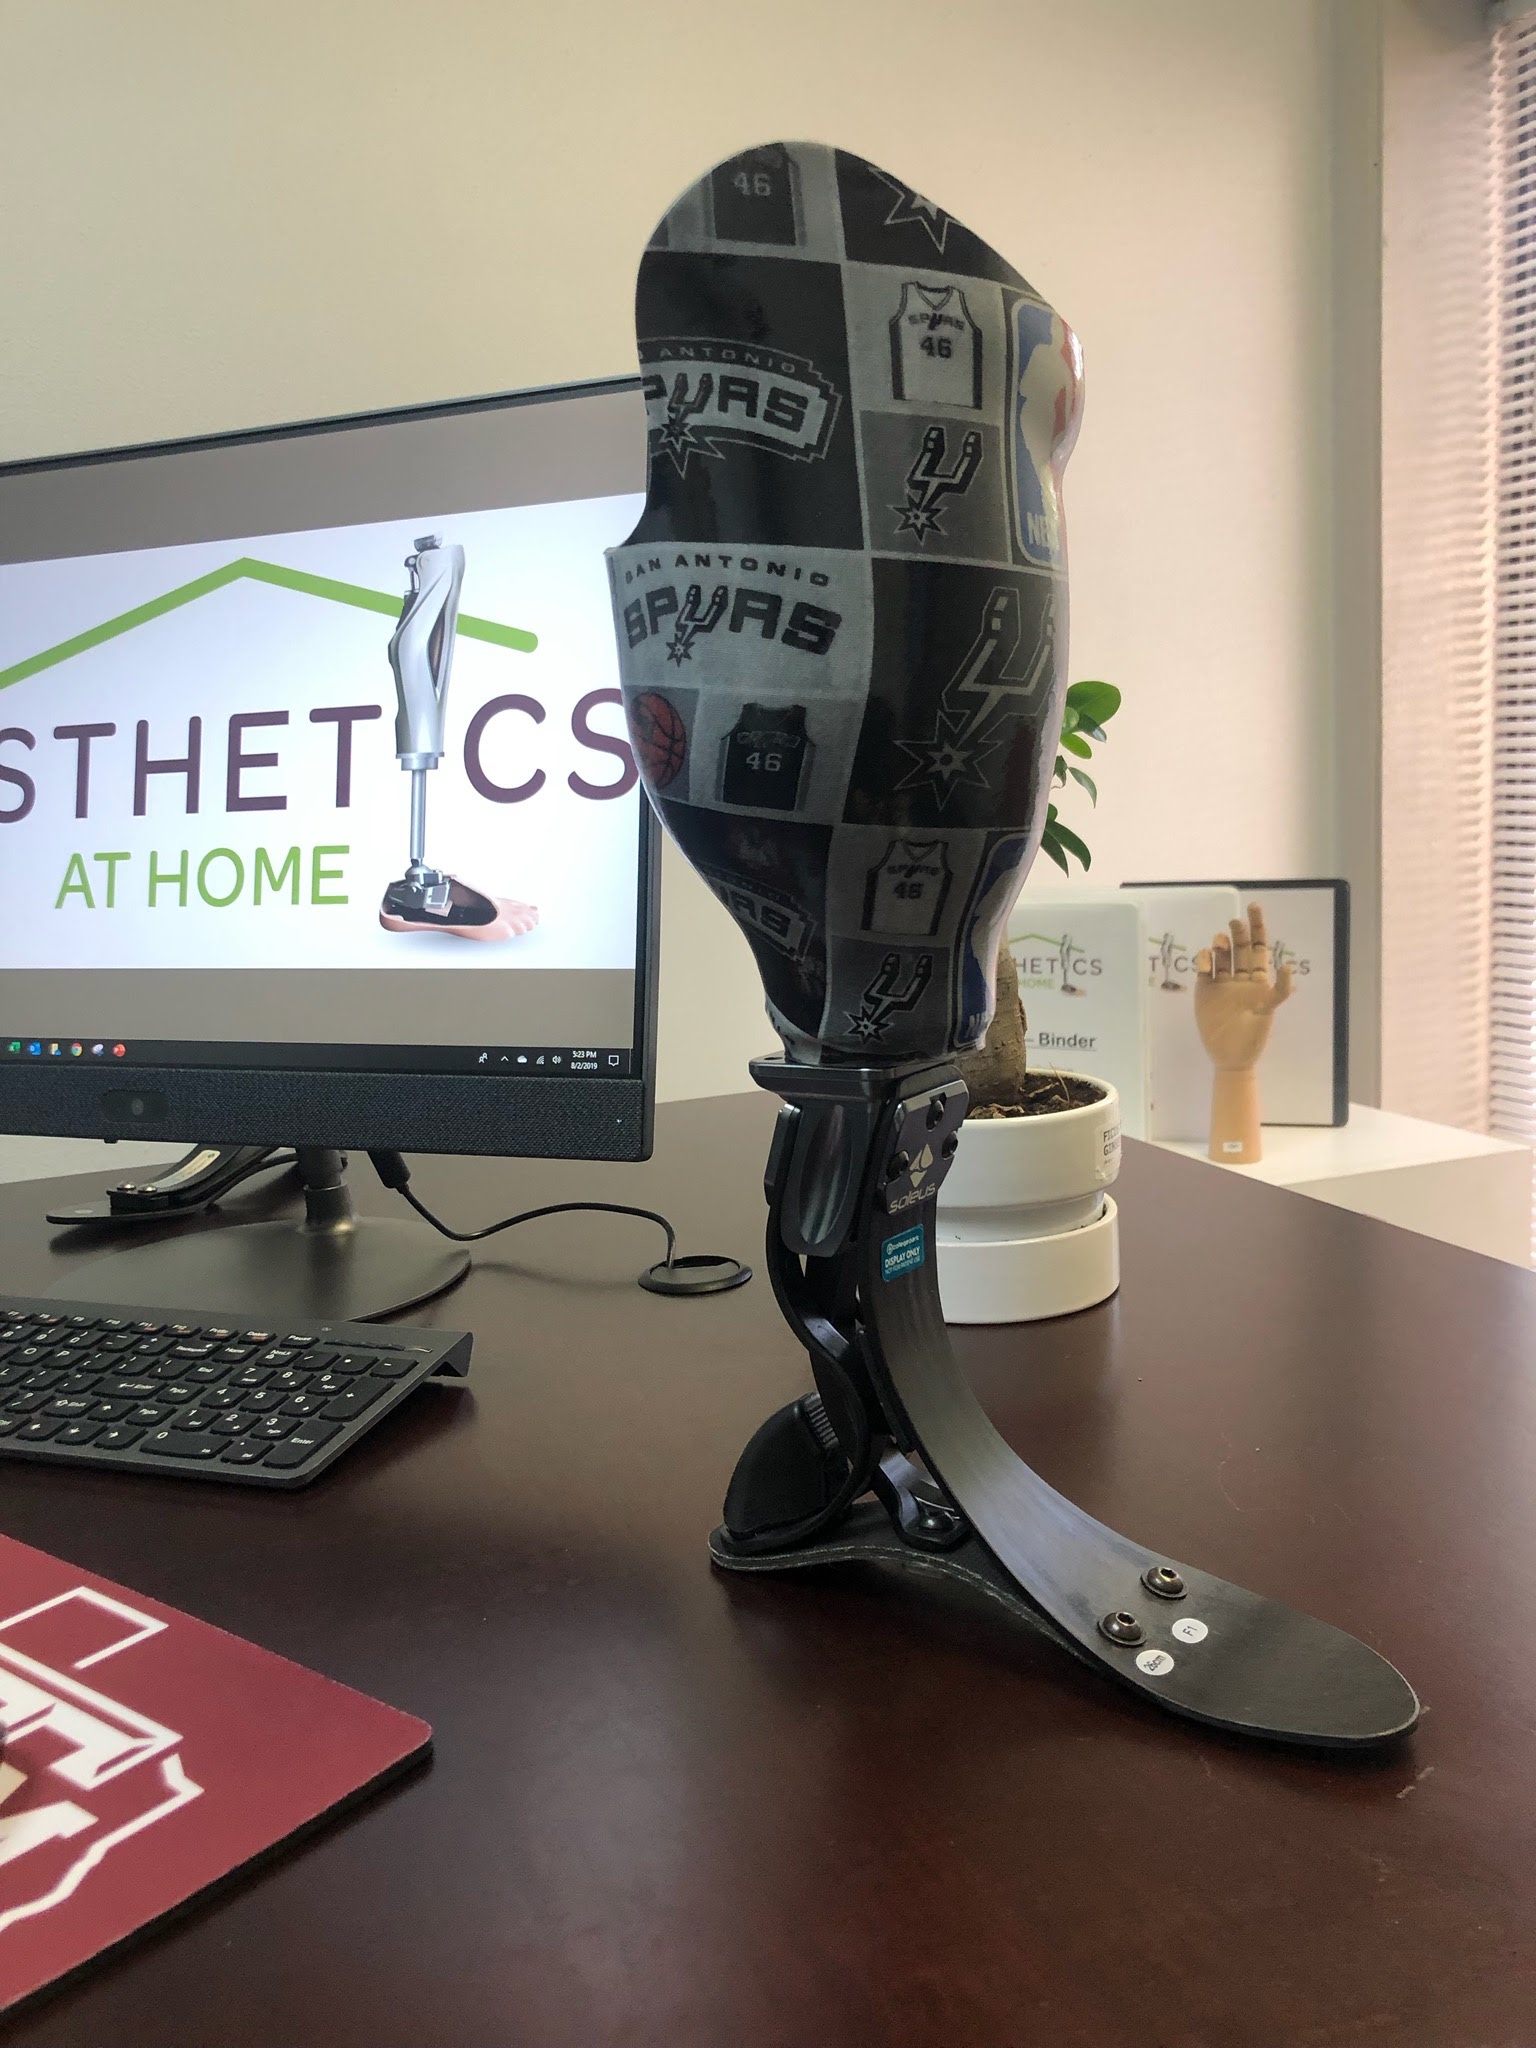 Home - Aesthetic Prosthetics Inc®